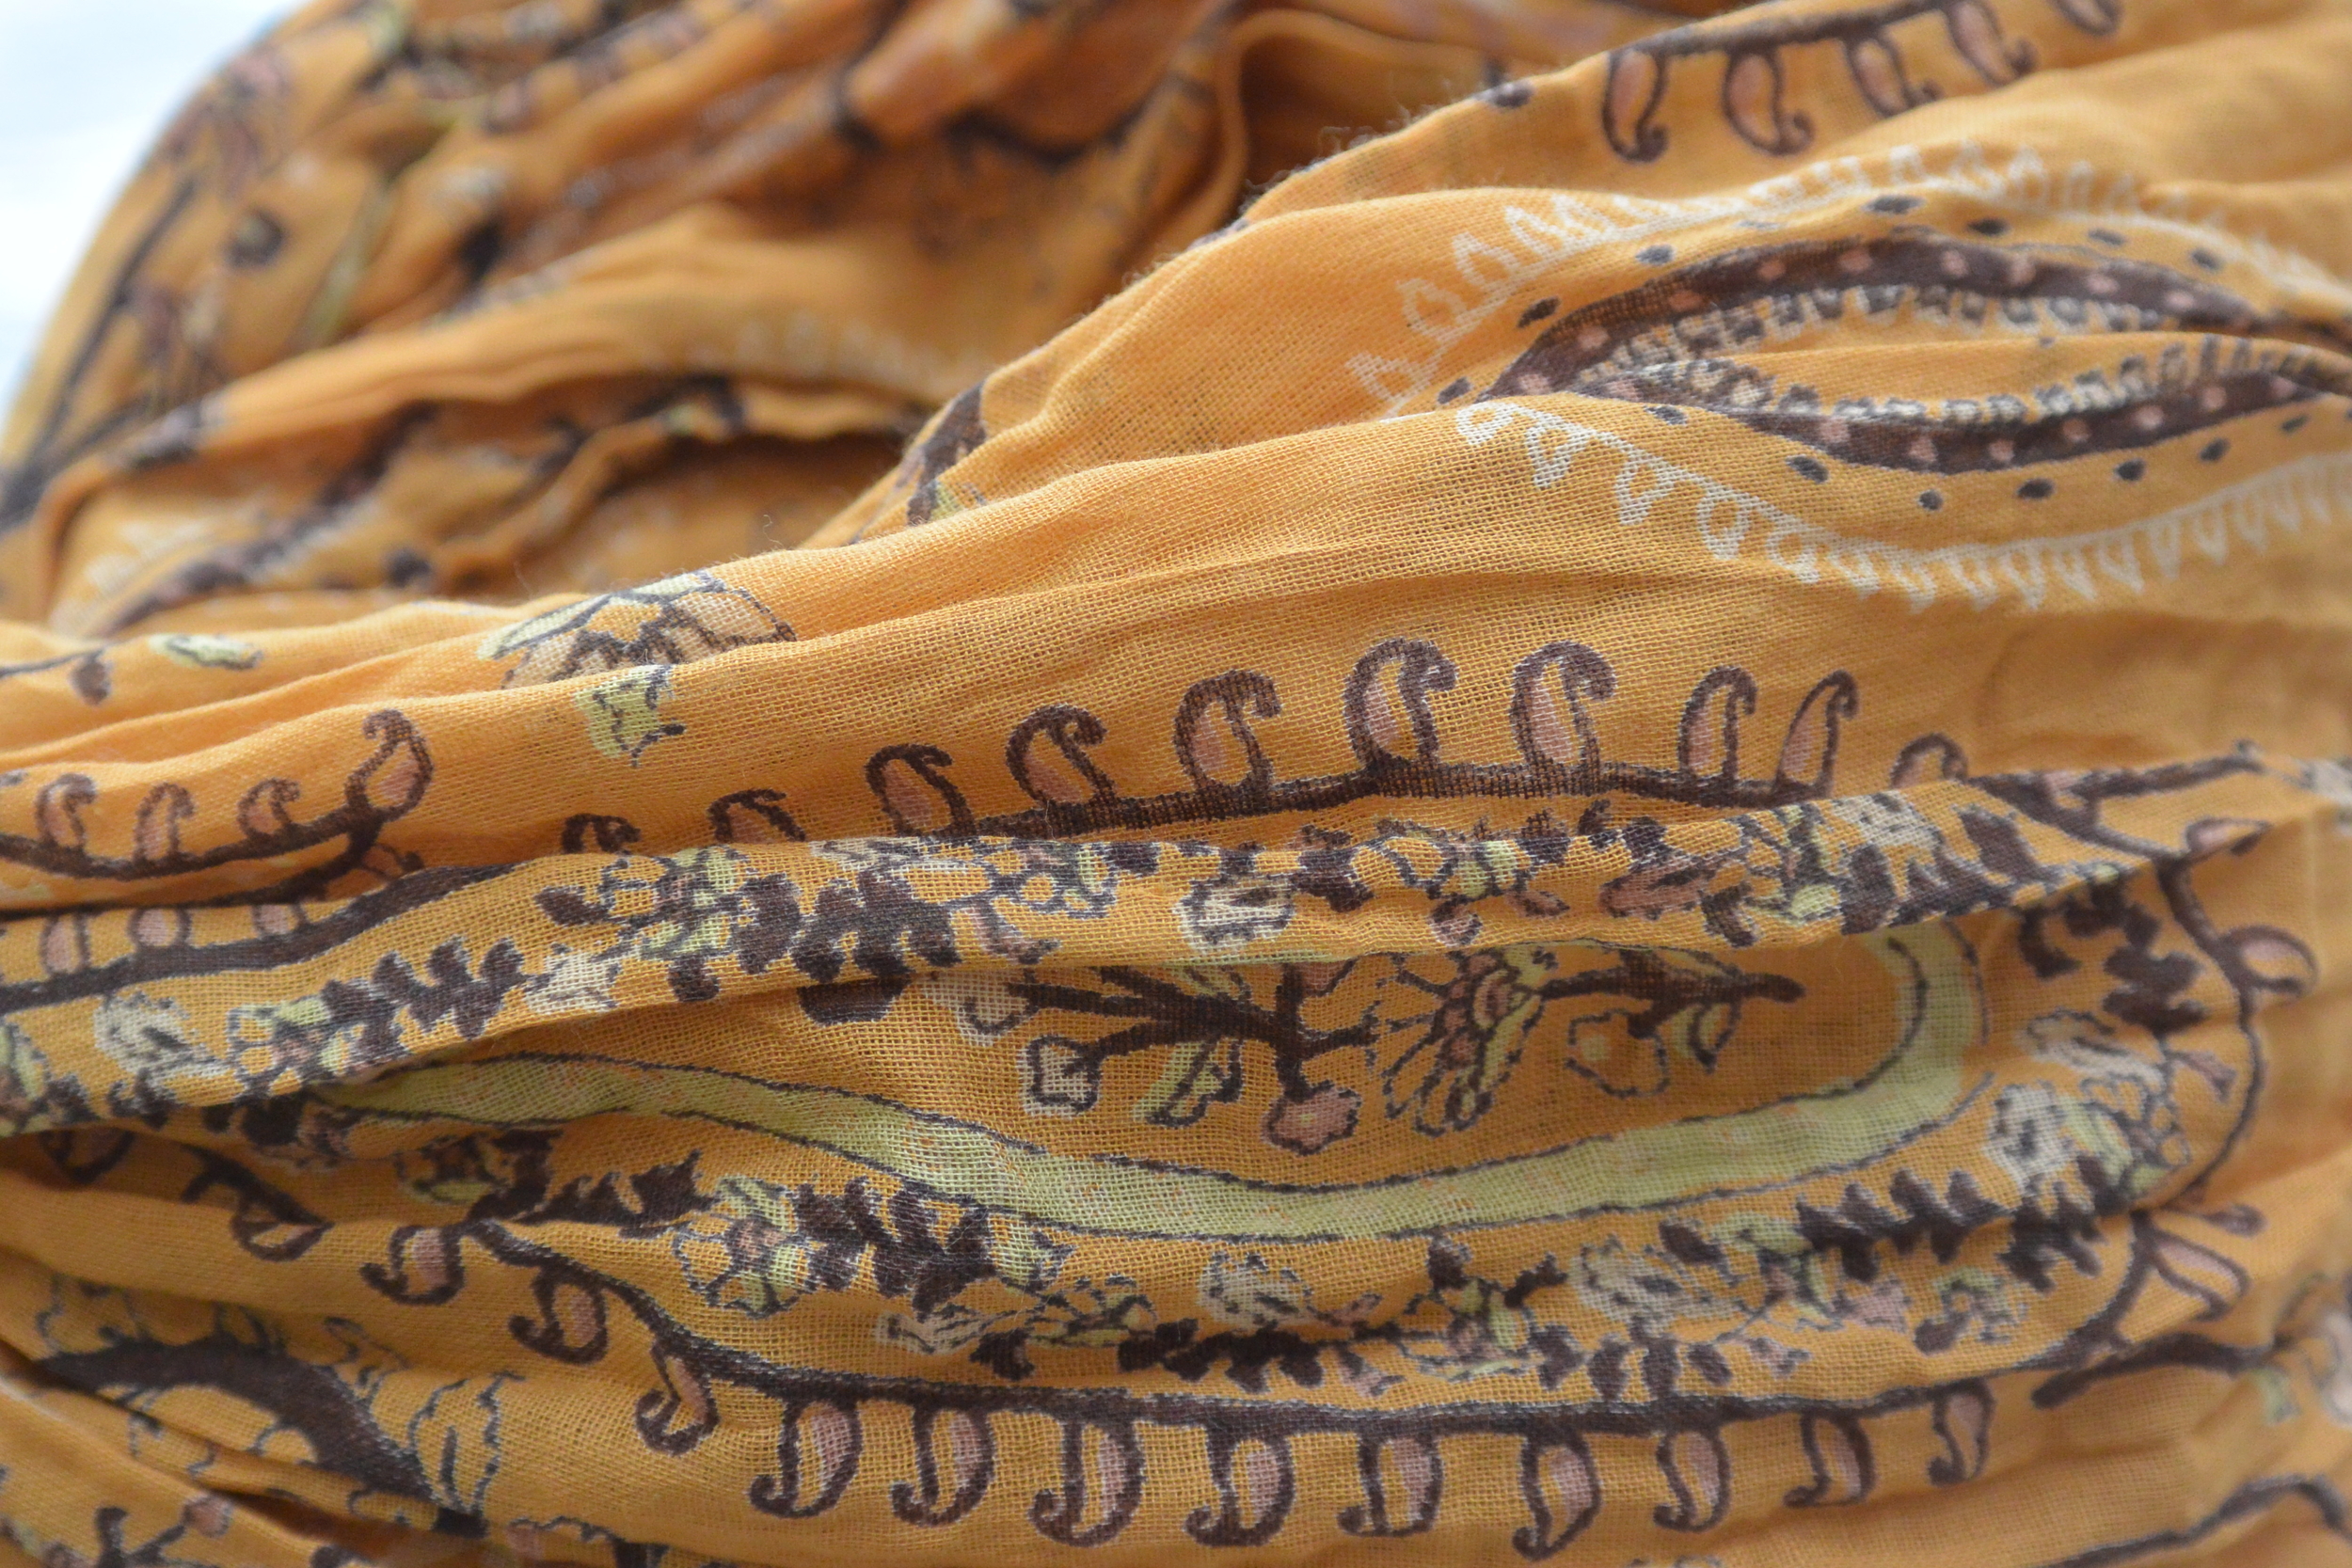 foulard zen ethic grande-etole-raj-voile-de-coton-110x180cm une idee cadeau chez ugo et lea   (5)